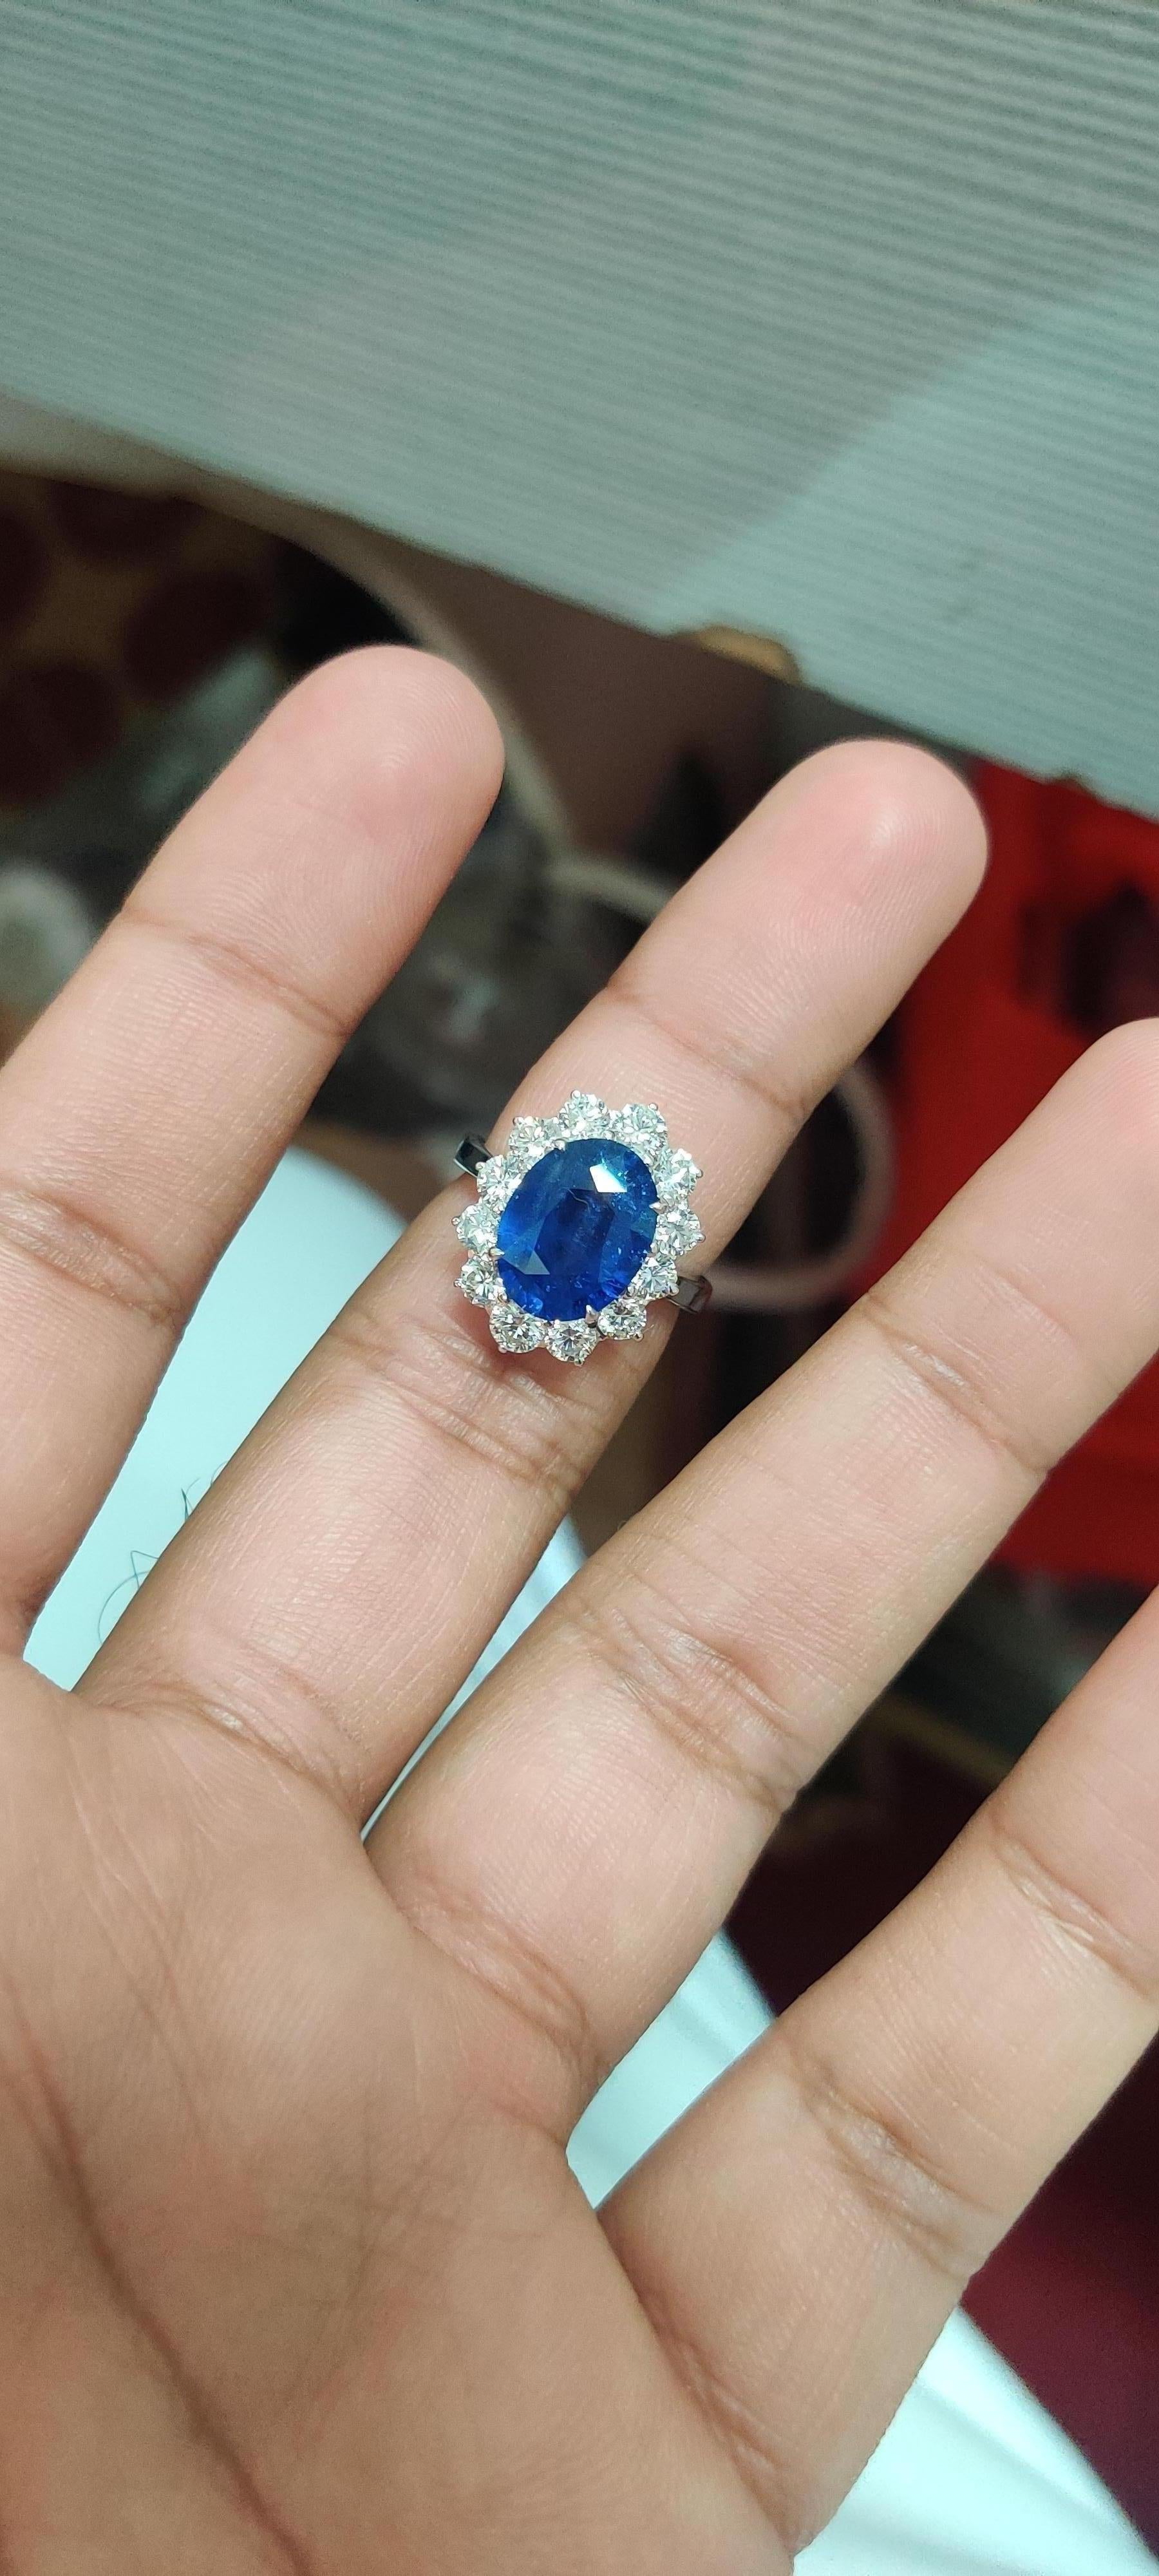 Voici notre exquise bague en saphir ovale de 4,56 carats, un chef-d'œuvre royal d'une beauté et d'une élégance intemporelles. Cette pièce captivante est ornée d'un saphir ovale de 4,56 carats, provenant du Sri Lanka, d'une riche teinte bleu royal